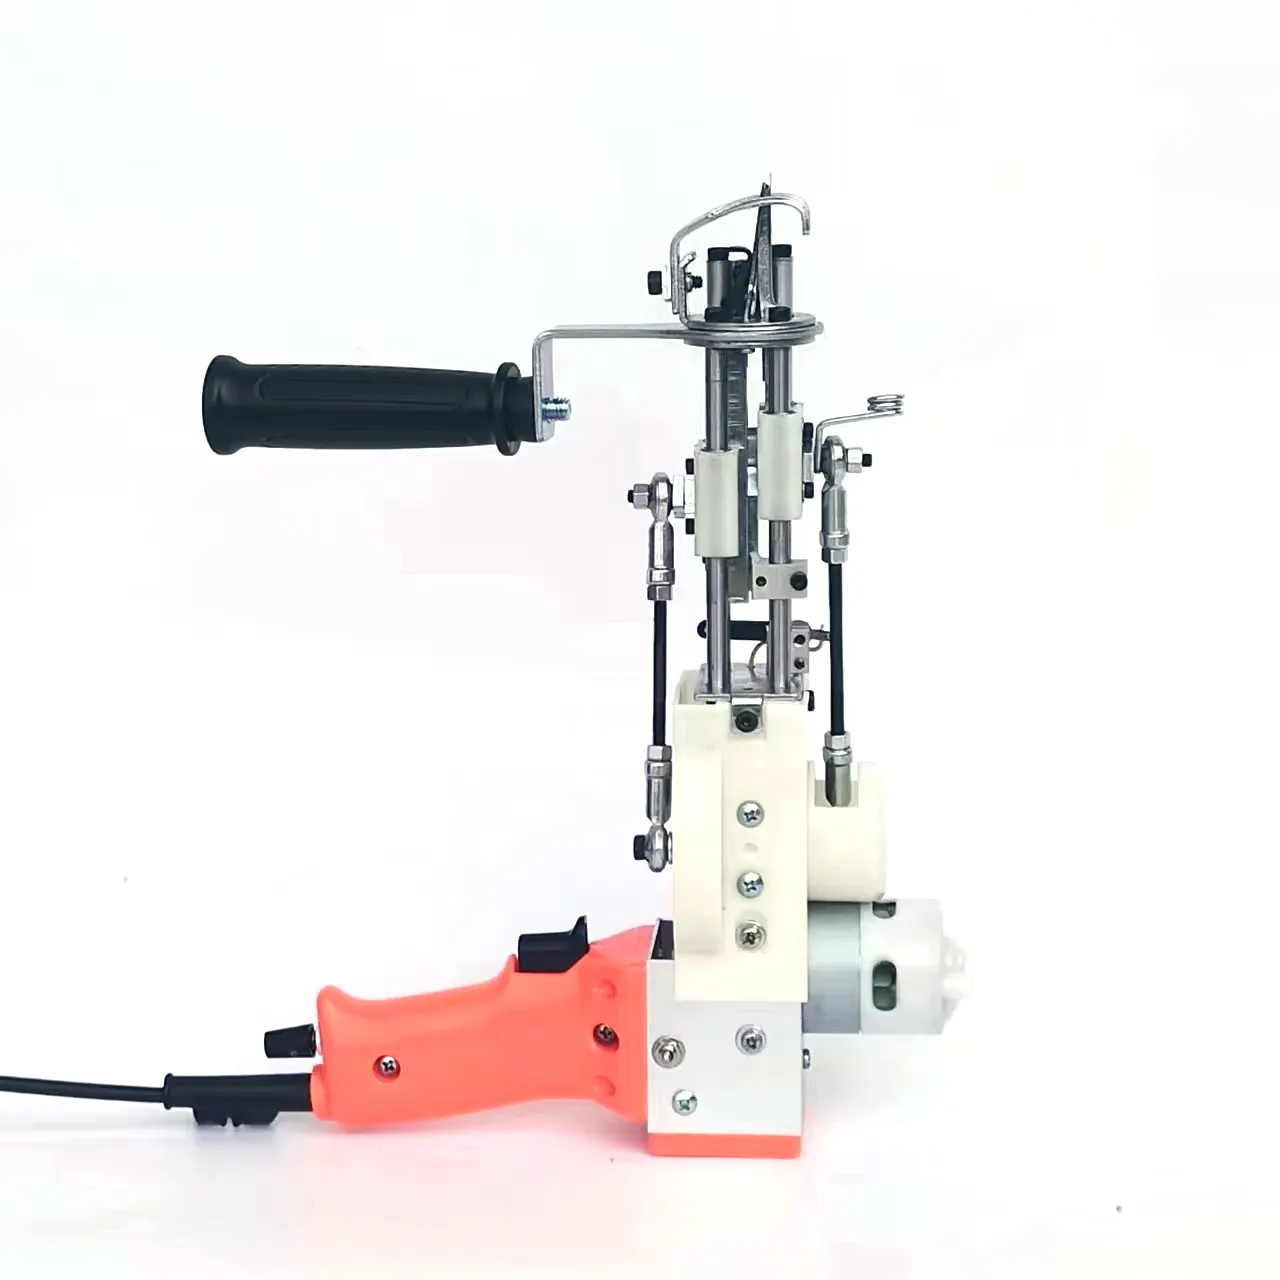 Multifunctioneel Gesneden Paal Tufting Gun Fabricage Ak-1 Tufting Pistool Voor Tuften Tapijt